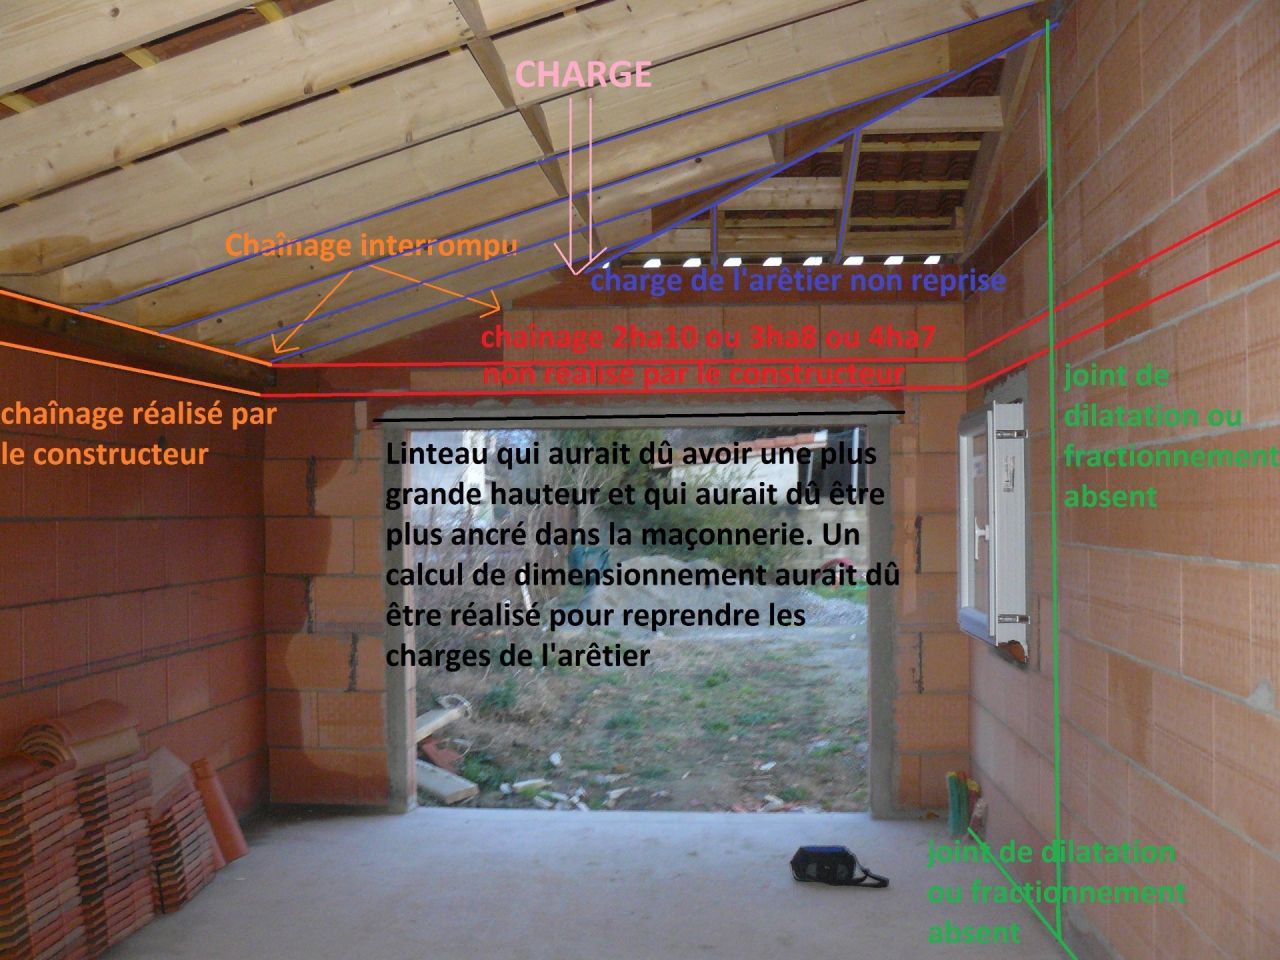 Problme mise en oeuvre dimensionnement charpente/ancrage linteaux/discontinuit chanage horizontal/joint dilatation